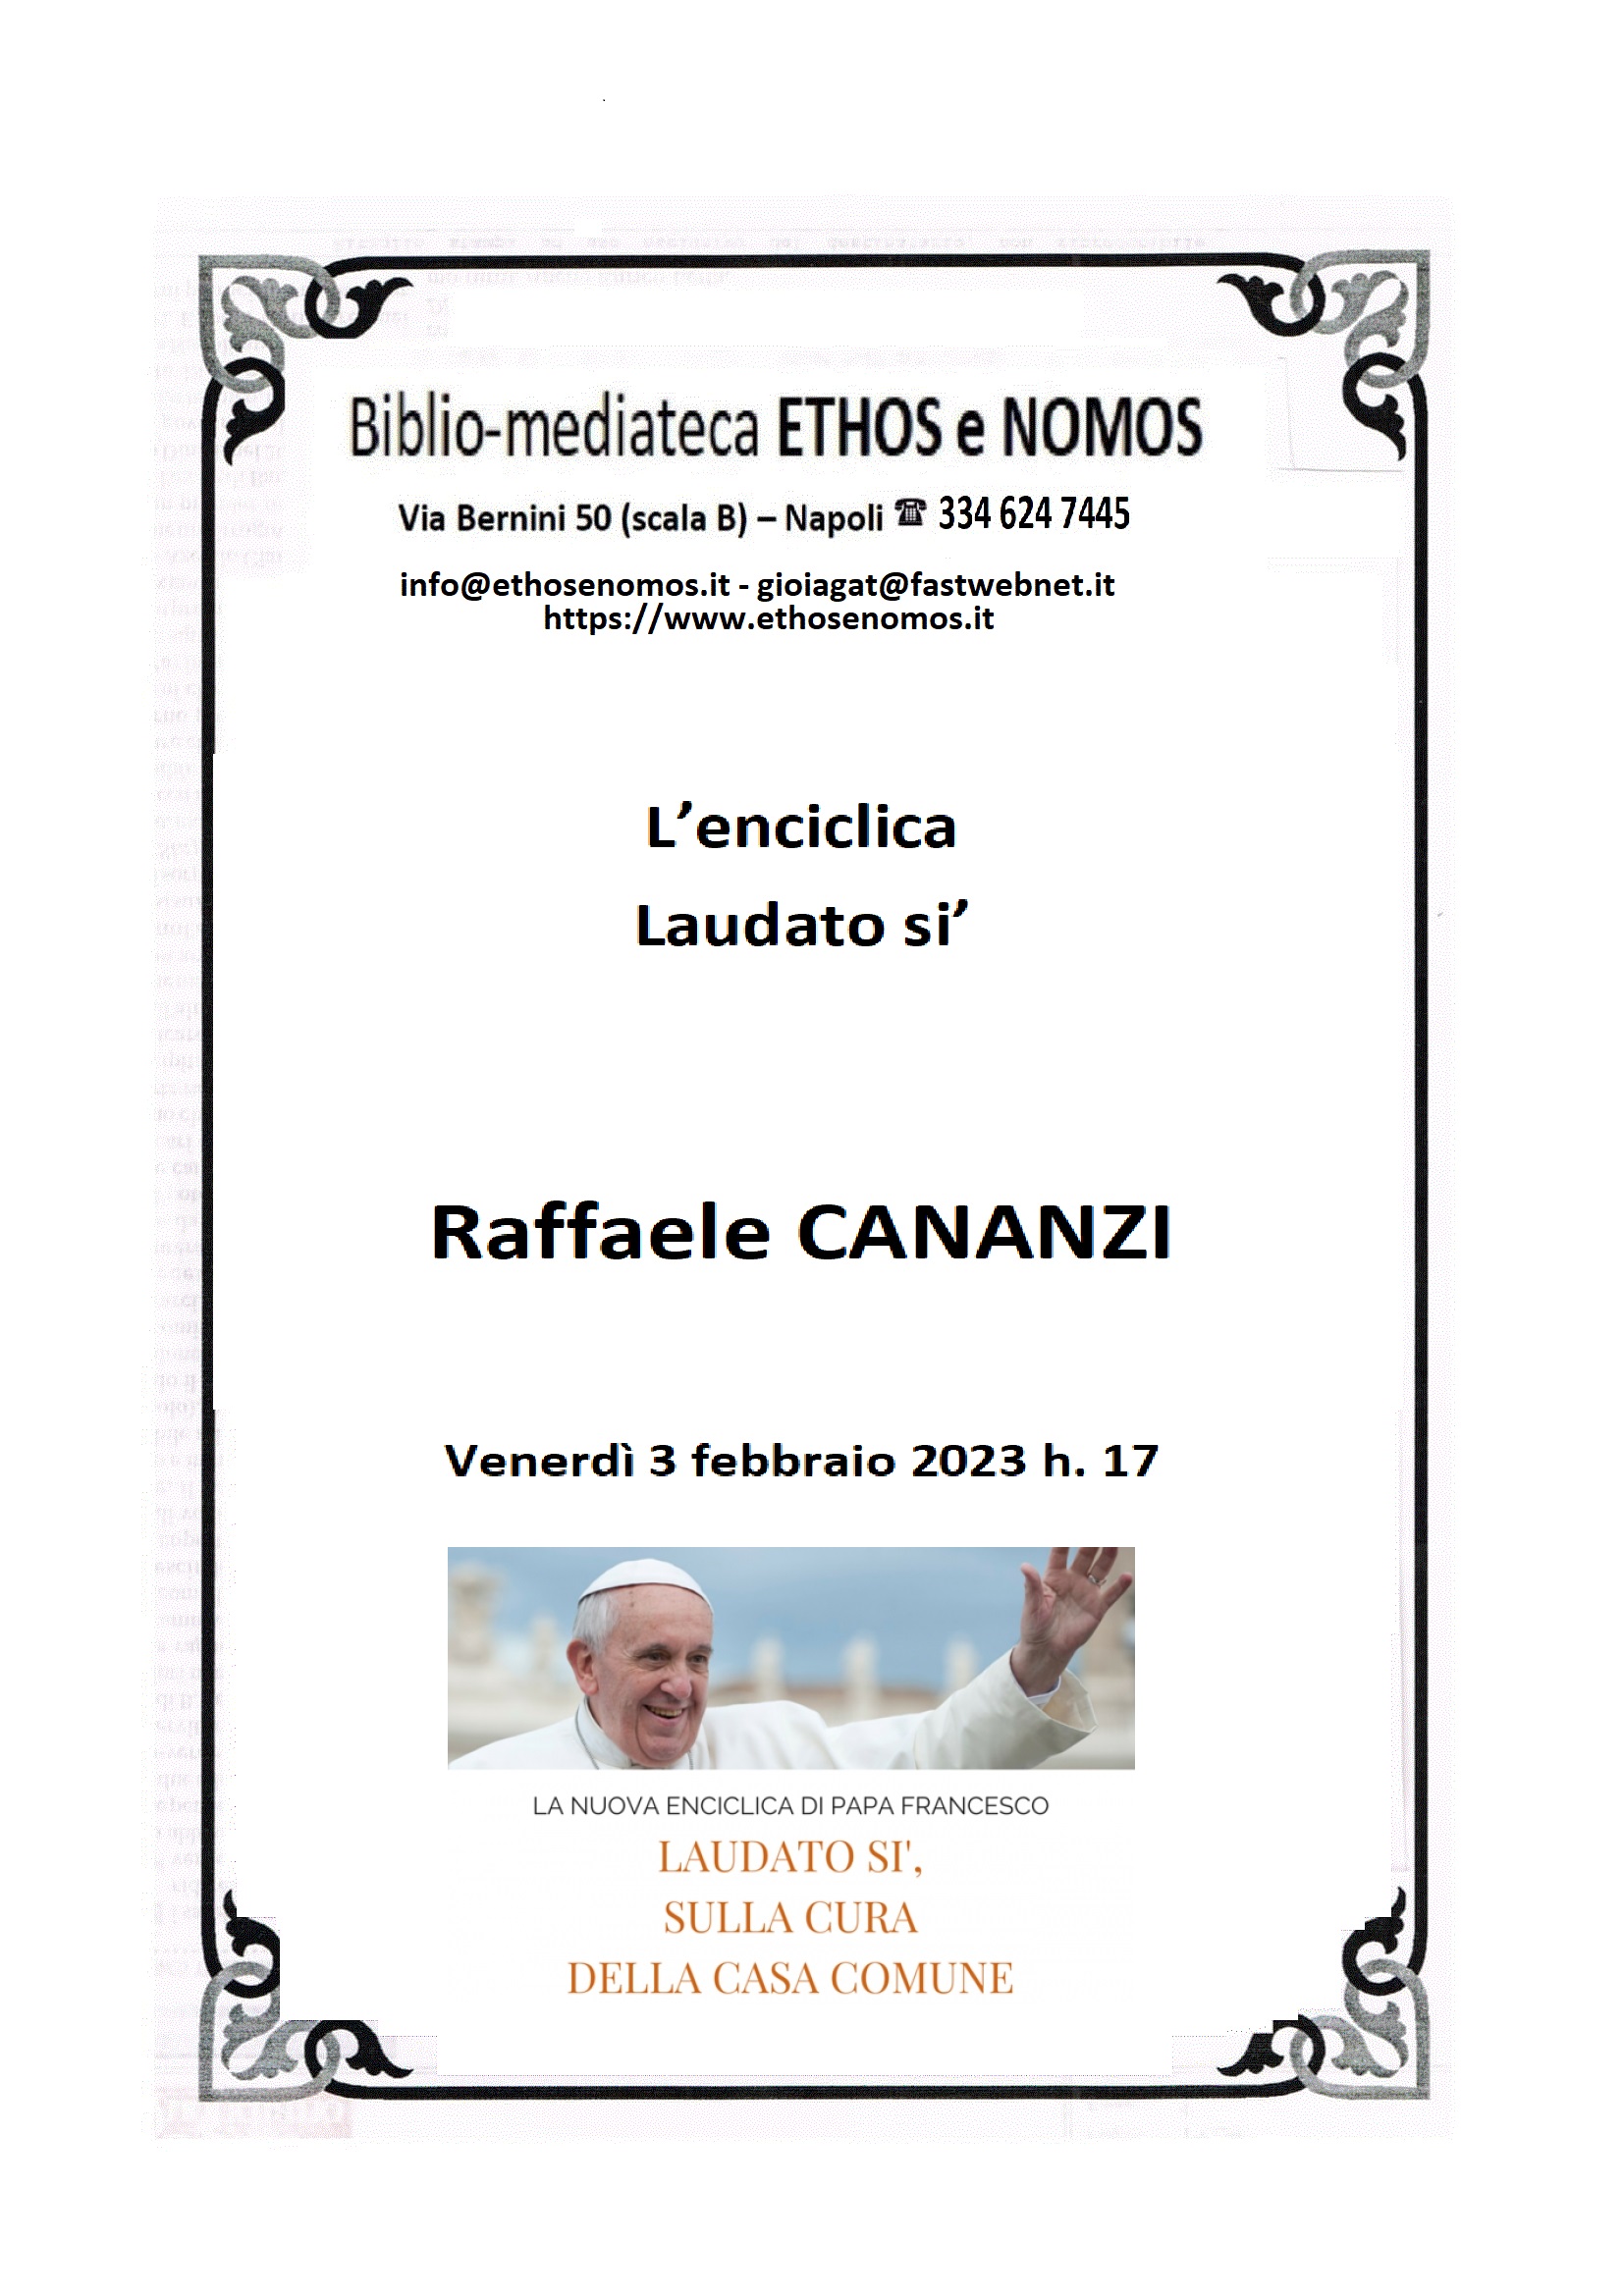 Raffaele CANANZI - L'enciclica Laudato si'